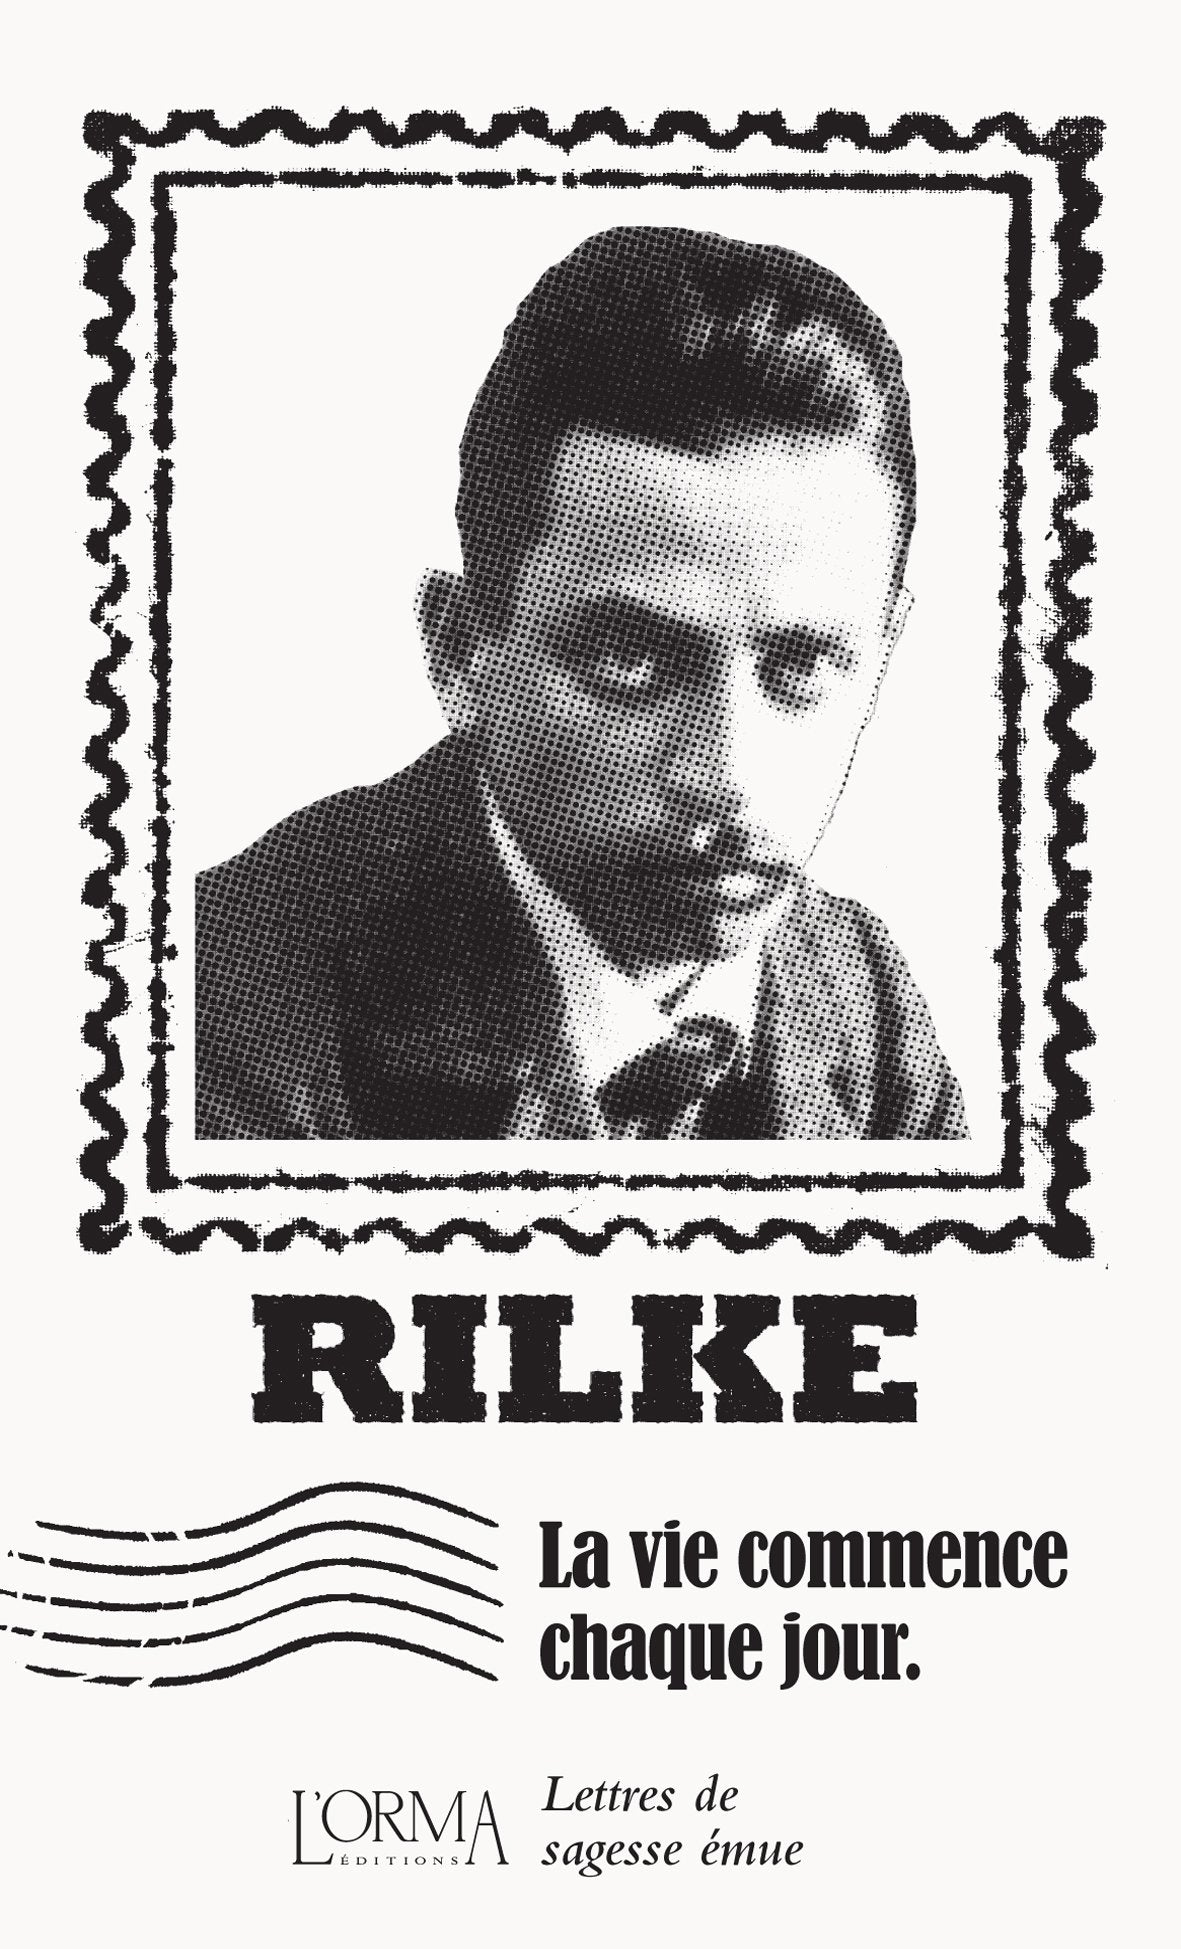 La vie commence chaque jour - Rilke